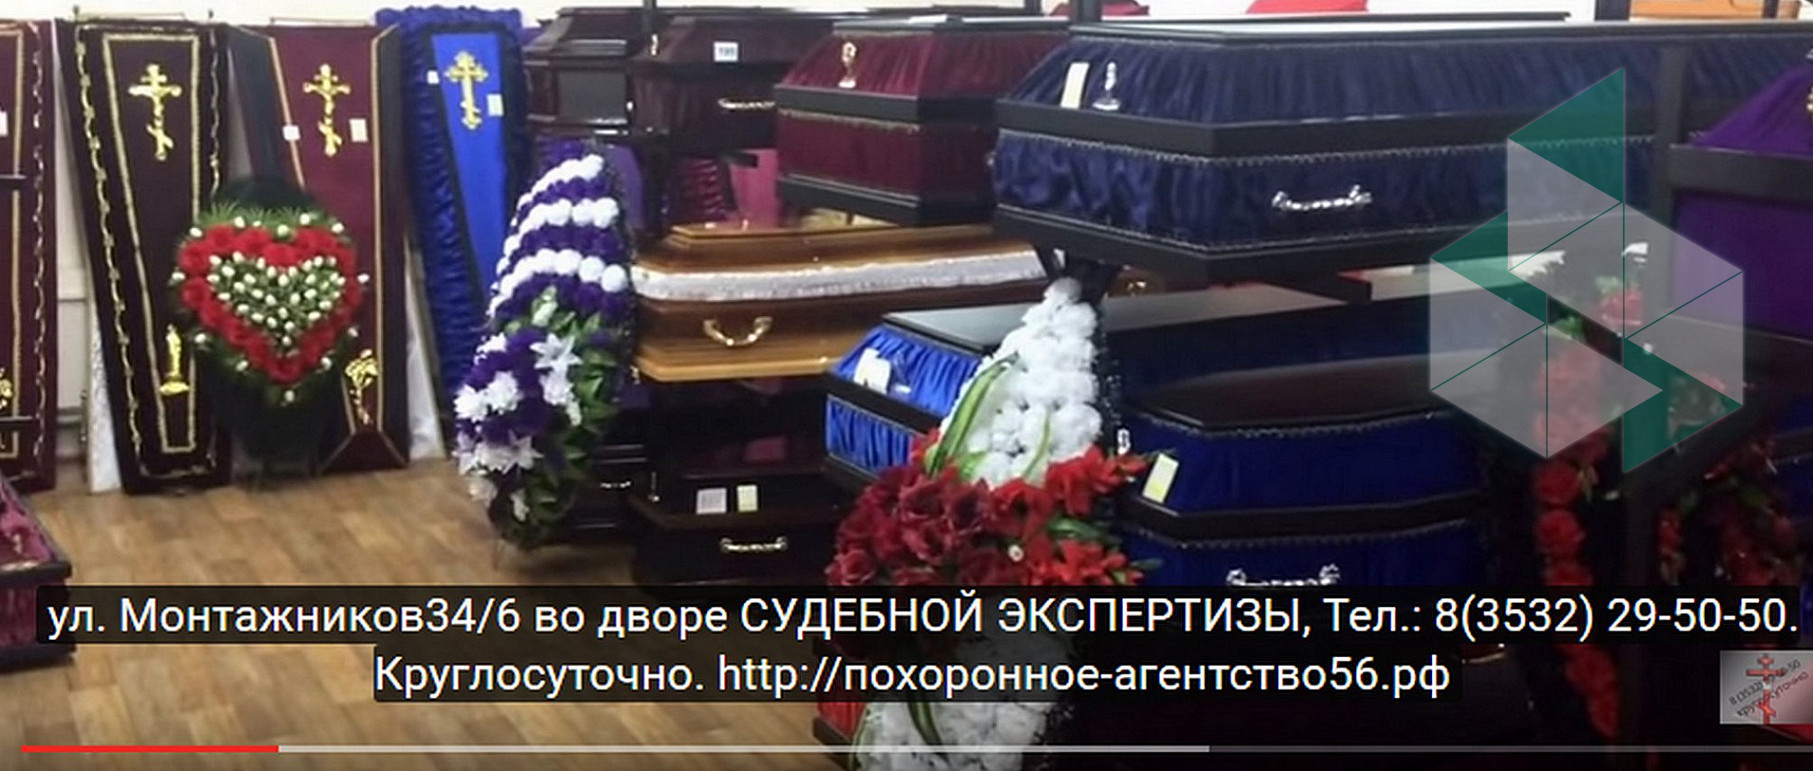 Уральские пельмени похоронен бюро